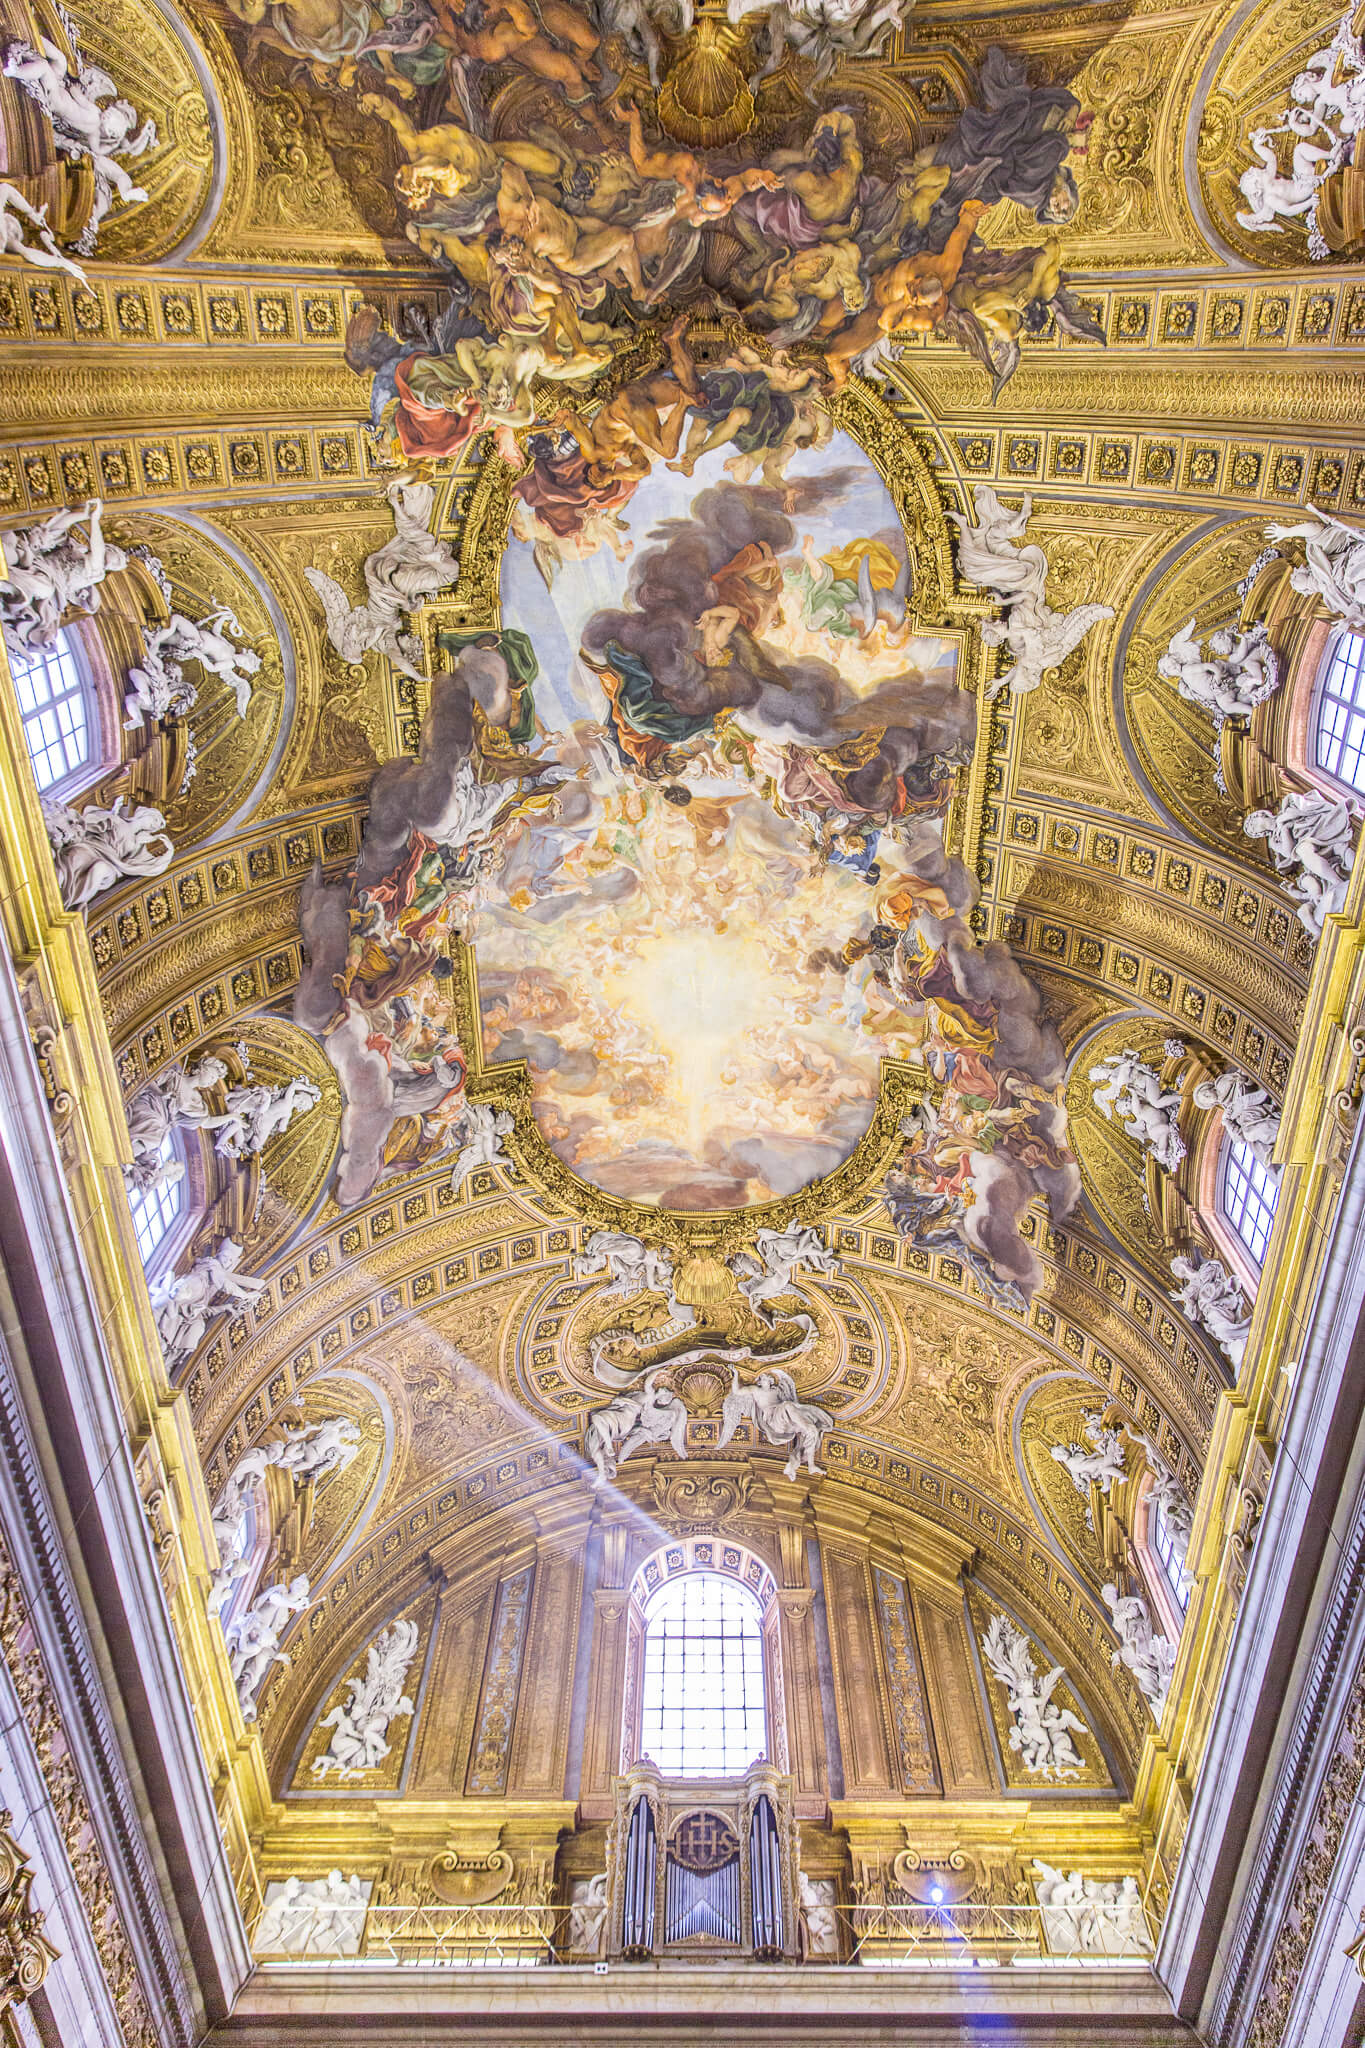 Trompe-l'oeil ceiling of the Gesù in Rome